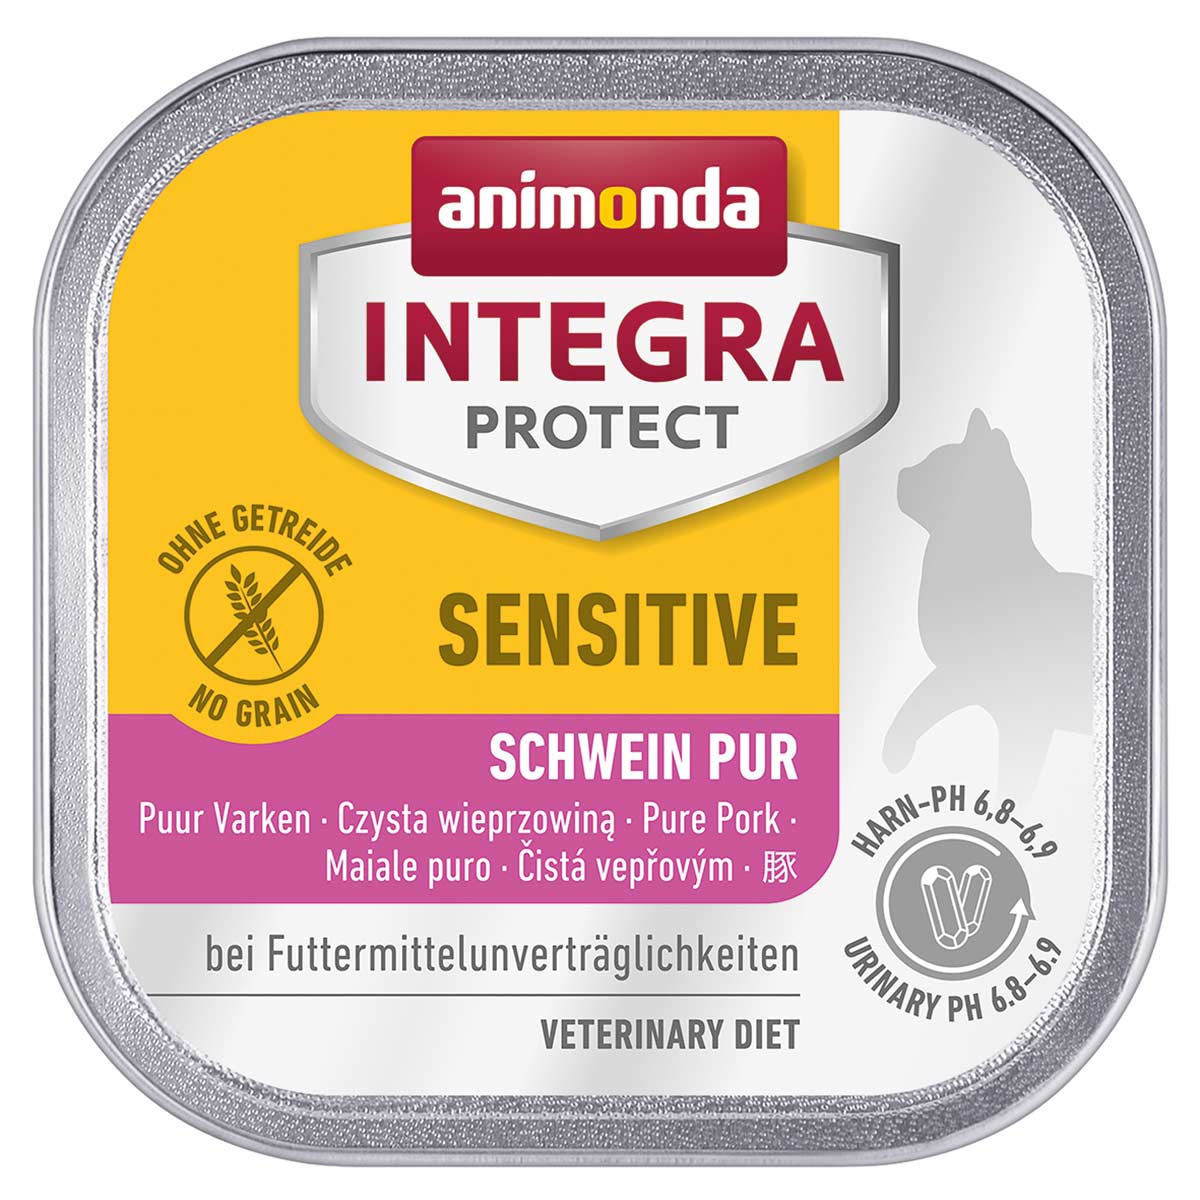 Animonda Integra Protect Sensitive čisté vepřové maso 16x100g